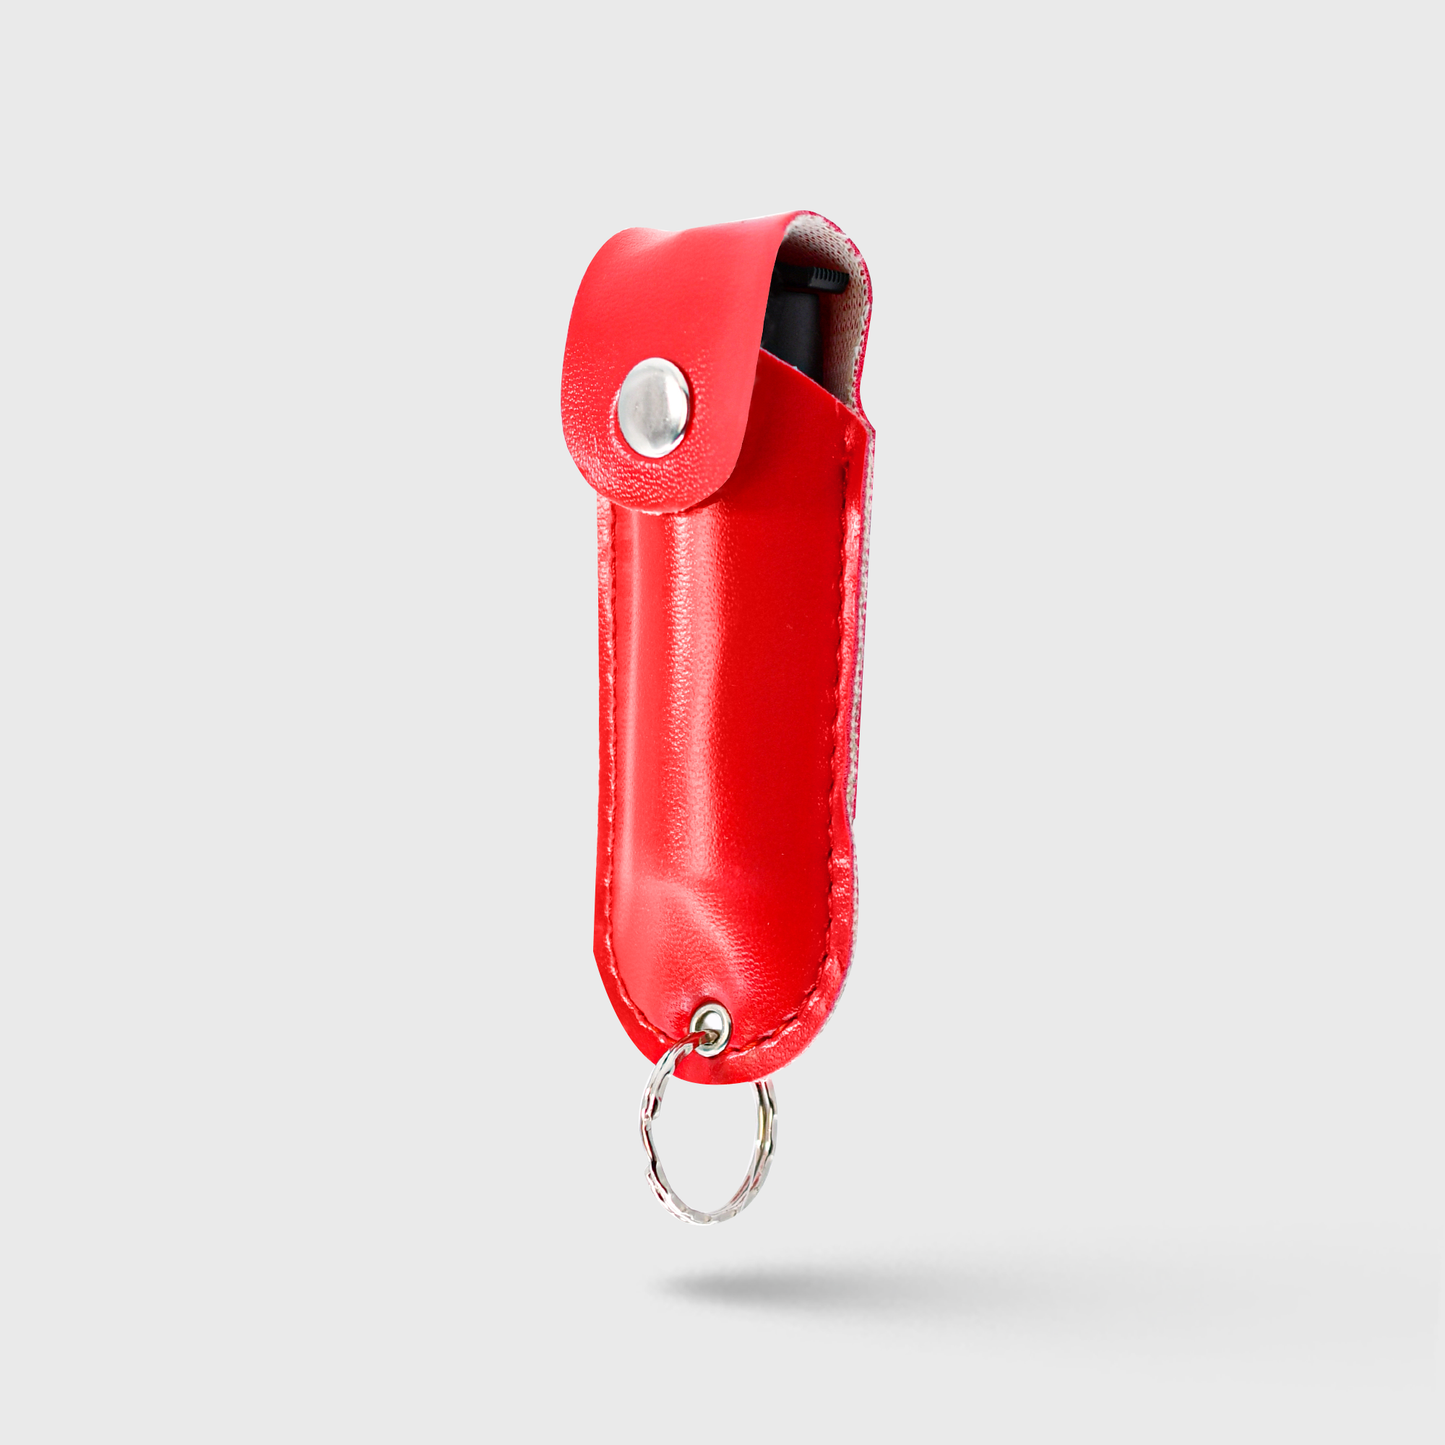 
                  
                    Pepper Spray Soft Leather Case | 0.5 oz w/ Keychain
                  
                